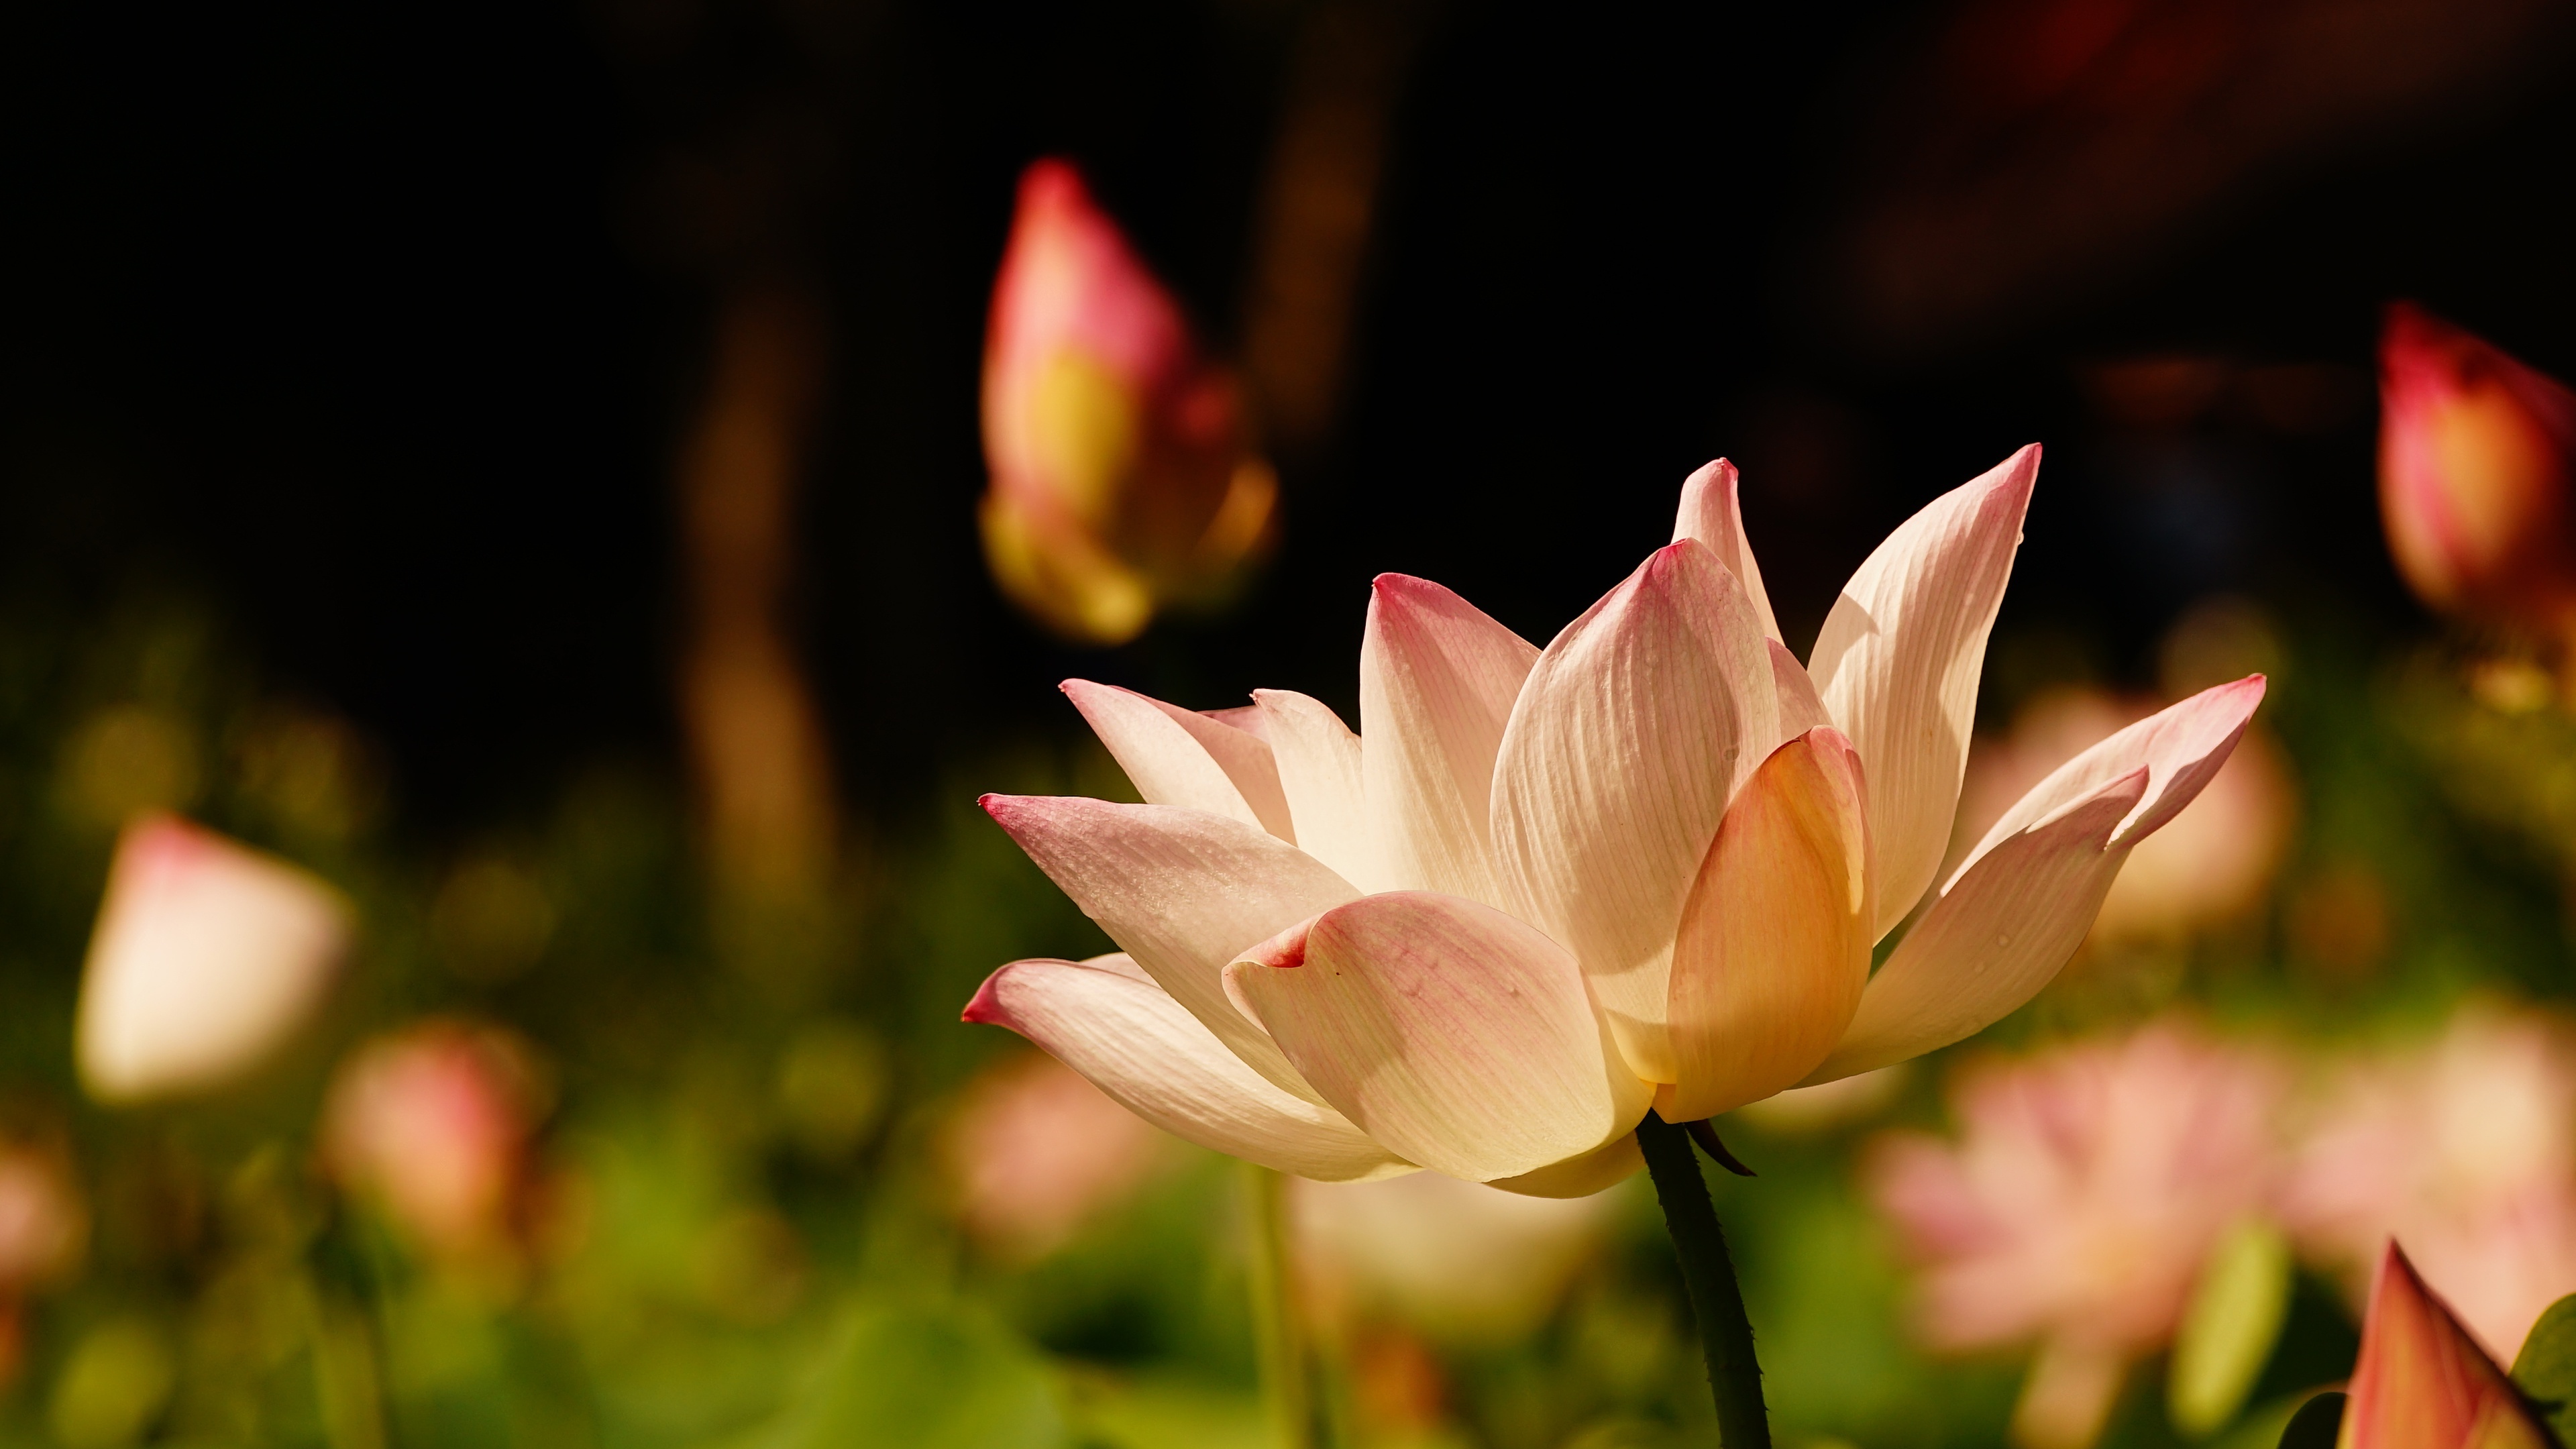 Pink lotus nature, Close-up flower, Beautiful petals, 3840x2160 4K Desktop